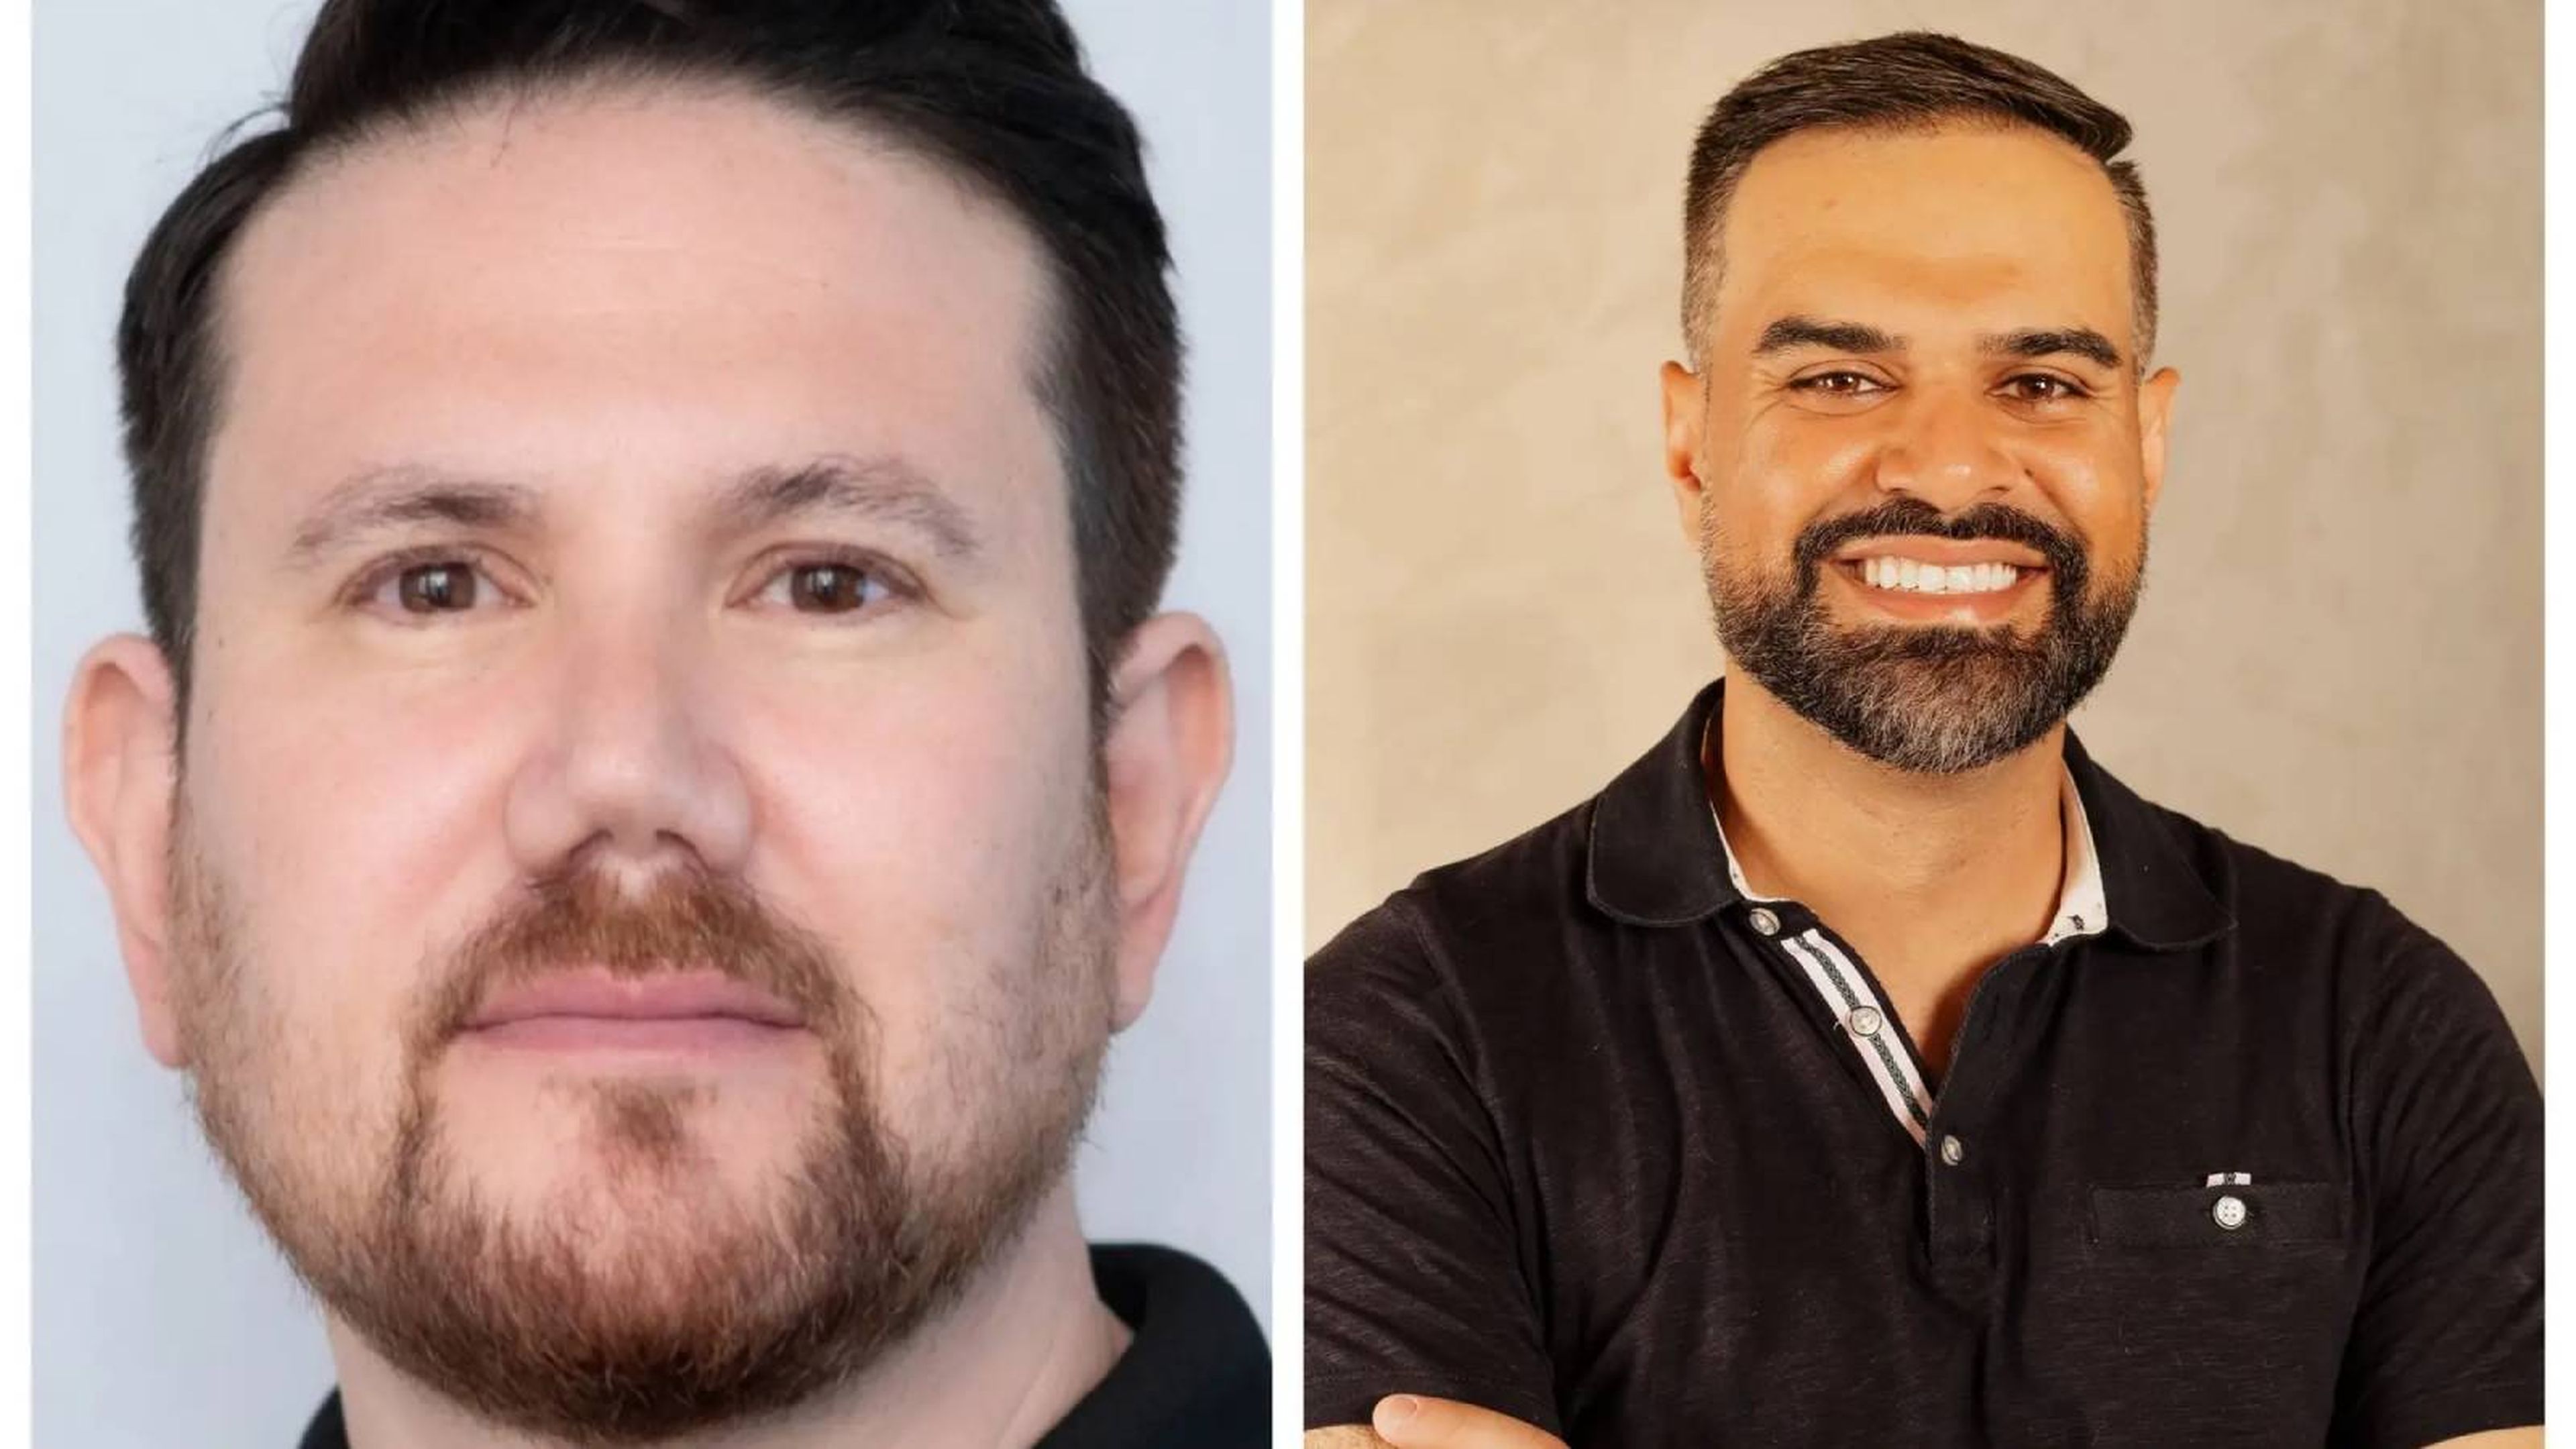 Nitzan Mekel-Bobrov (izquierda) es el director de Inteligencia Artificial de eBay, mientras que Miqdad Jaffer (derecha) es director de producto en Shopify. 